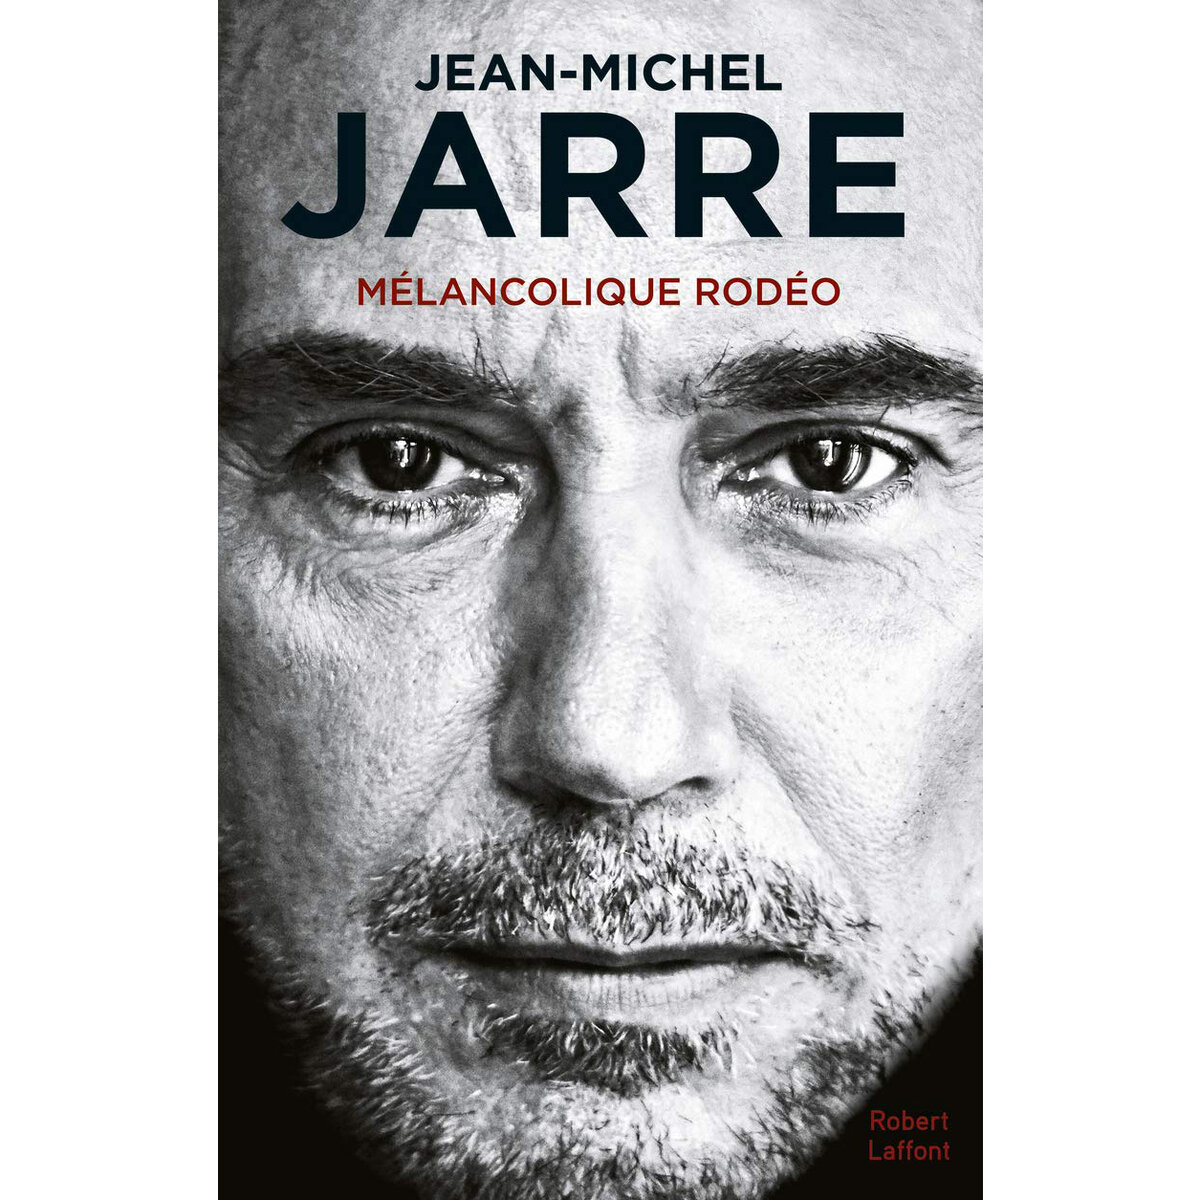 Жан-Мишель Жарр хотел написать роман, написал автобиографию